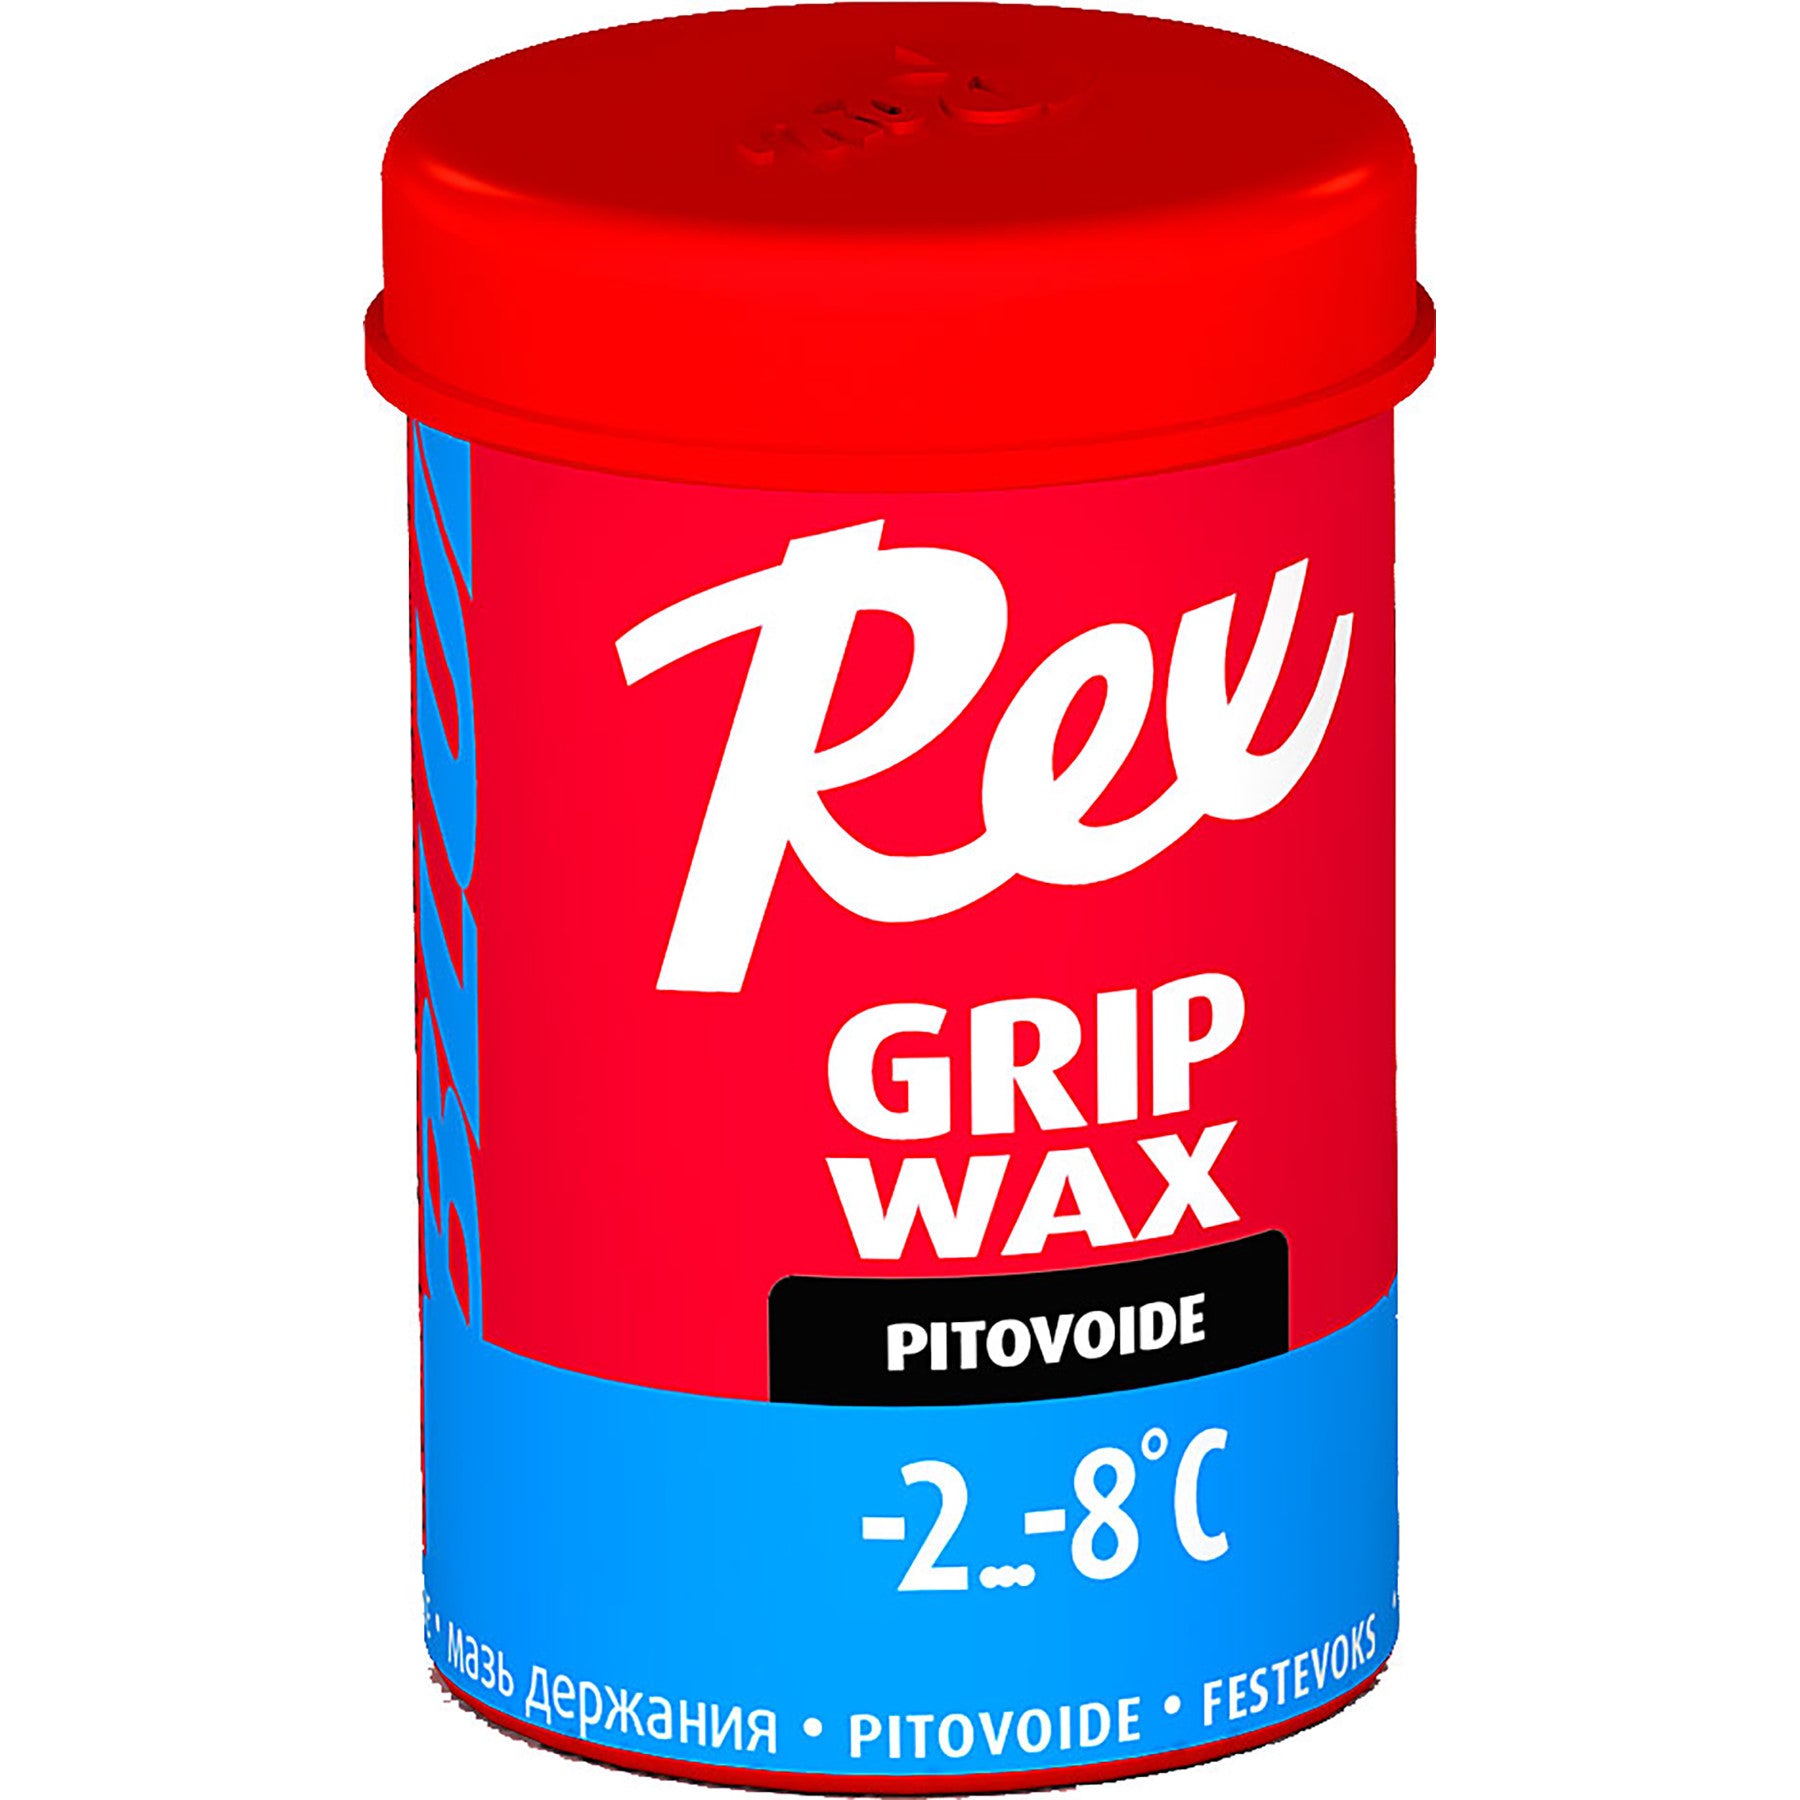 Rex Grip Wax 45g